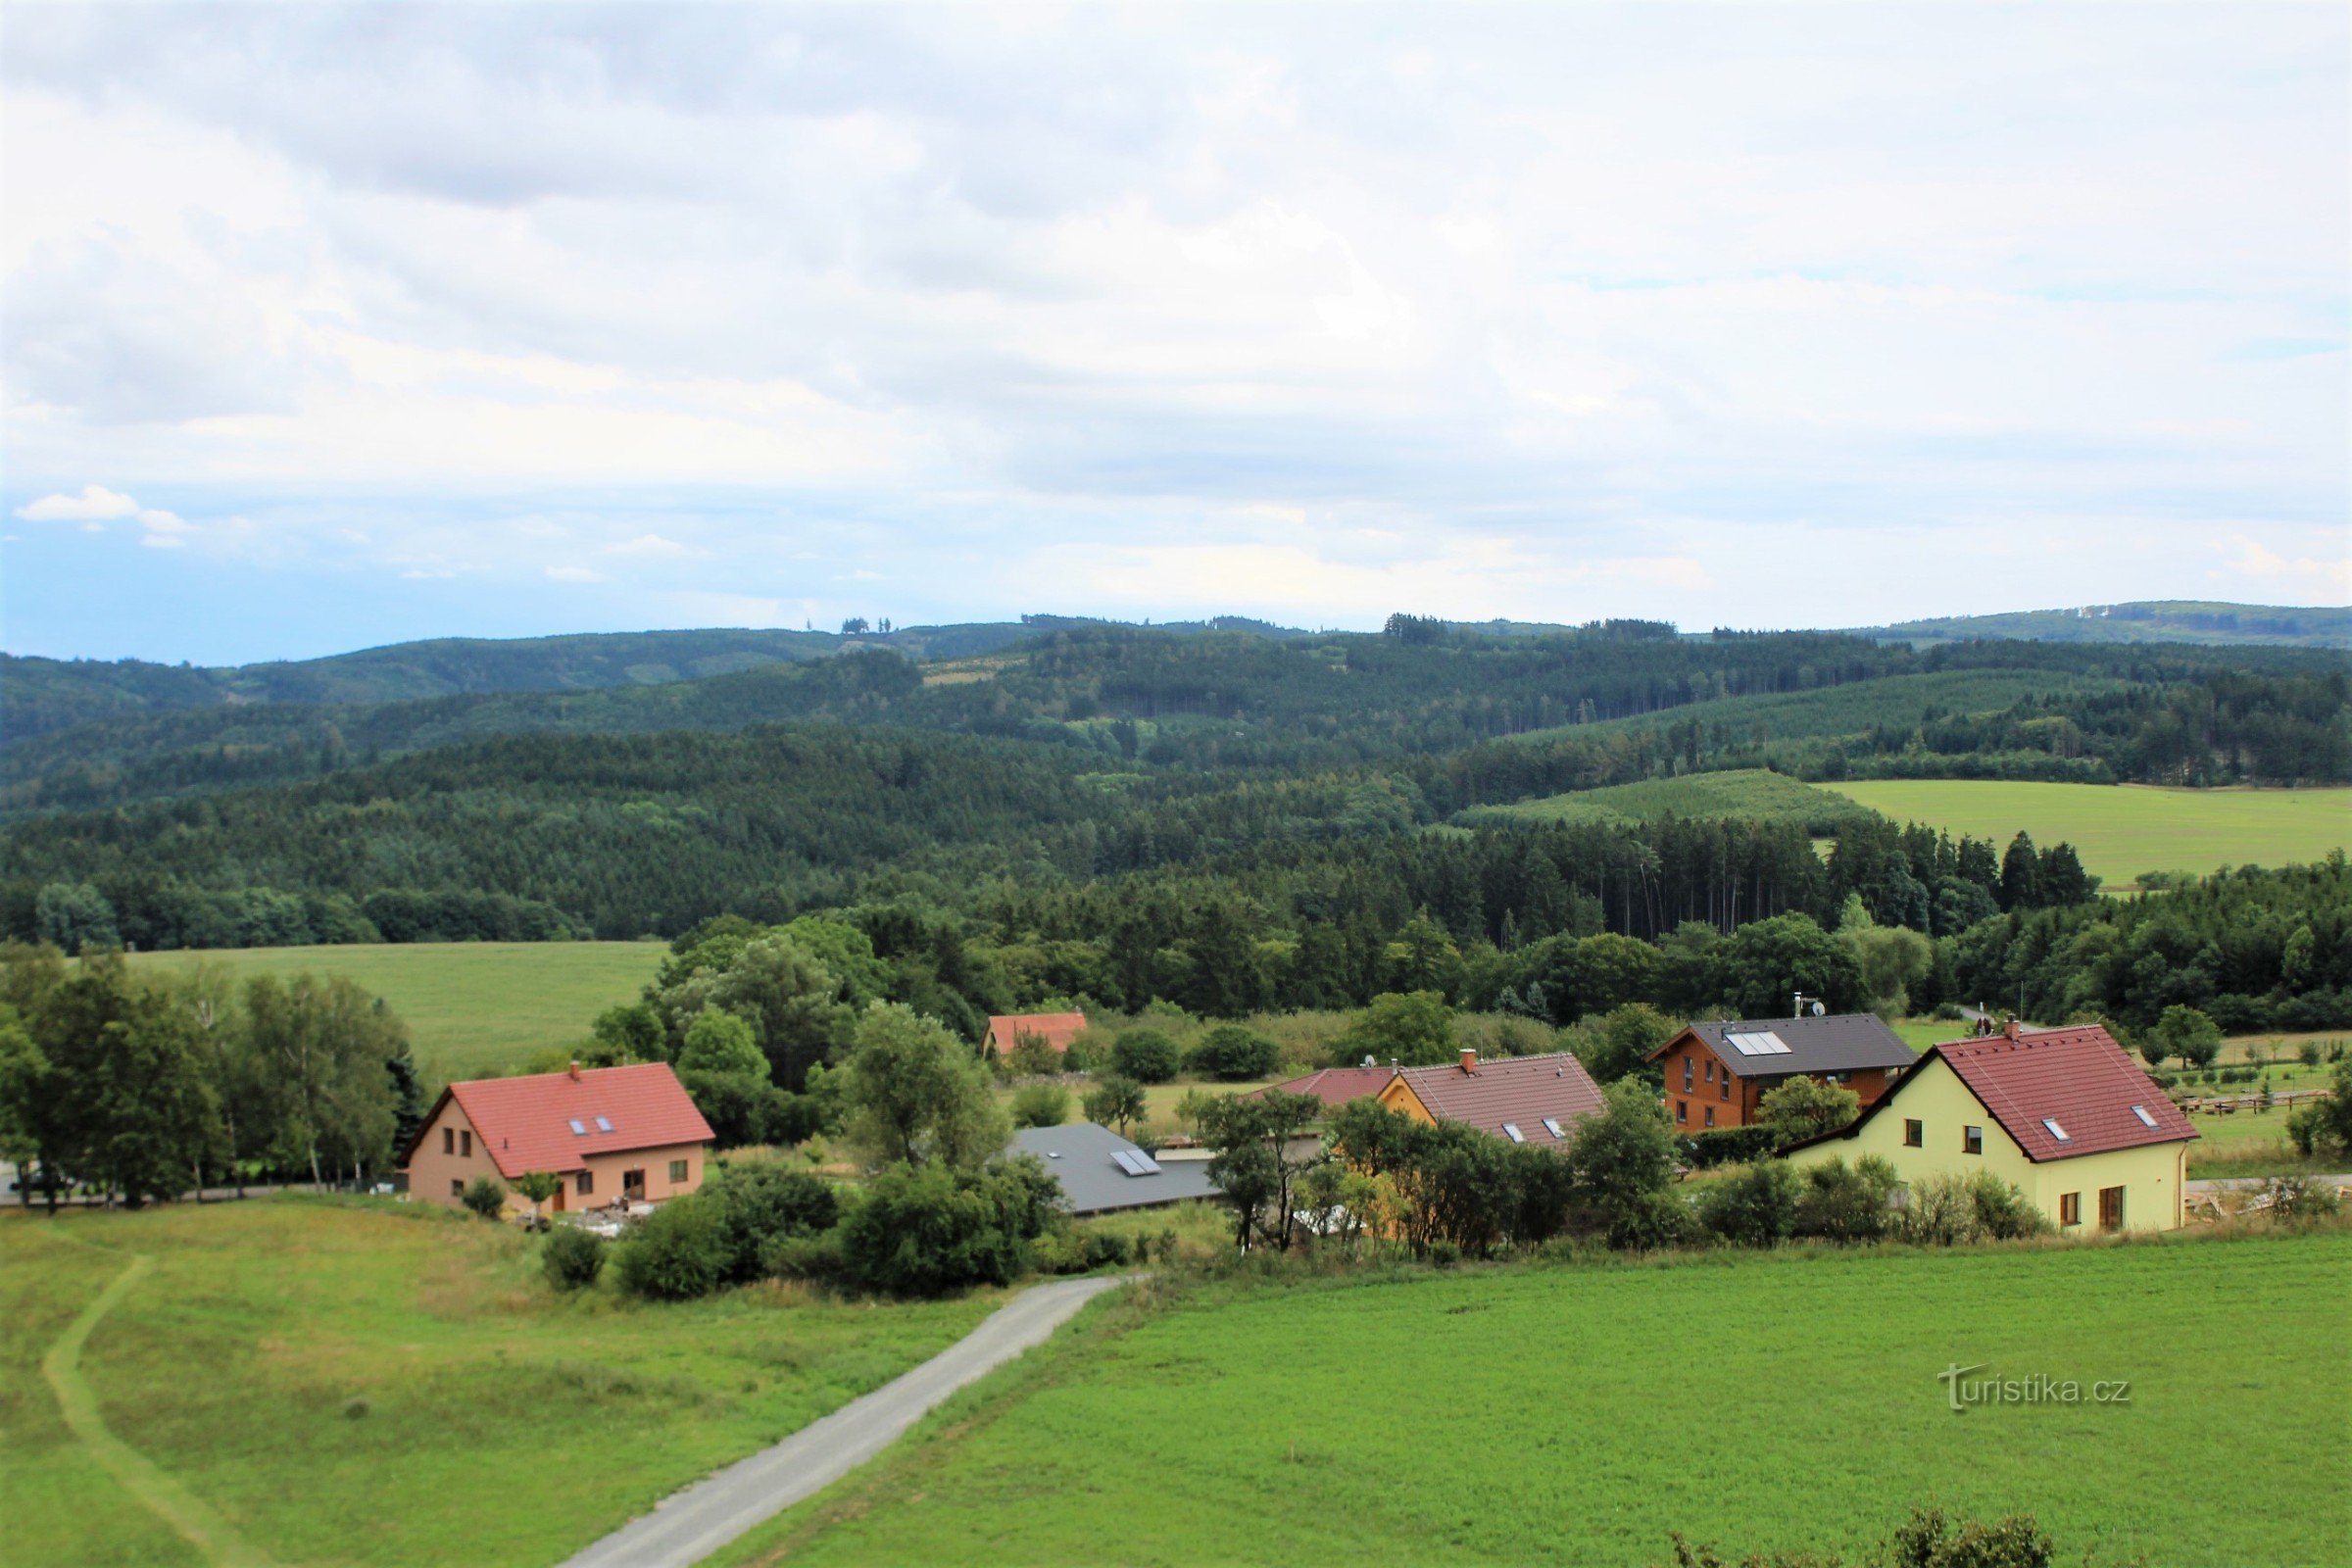 Widok z wieży widokowej na górną część wsi w kierunku Hořický hřbet